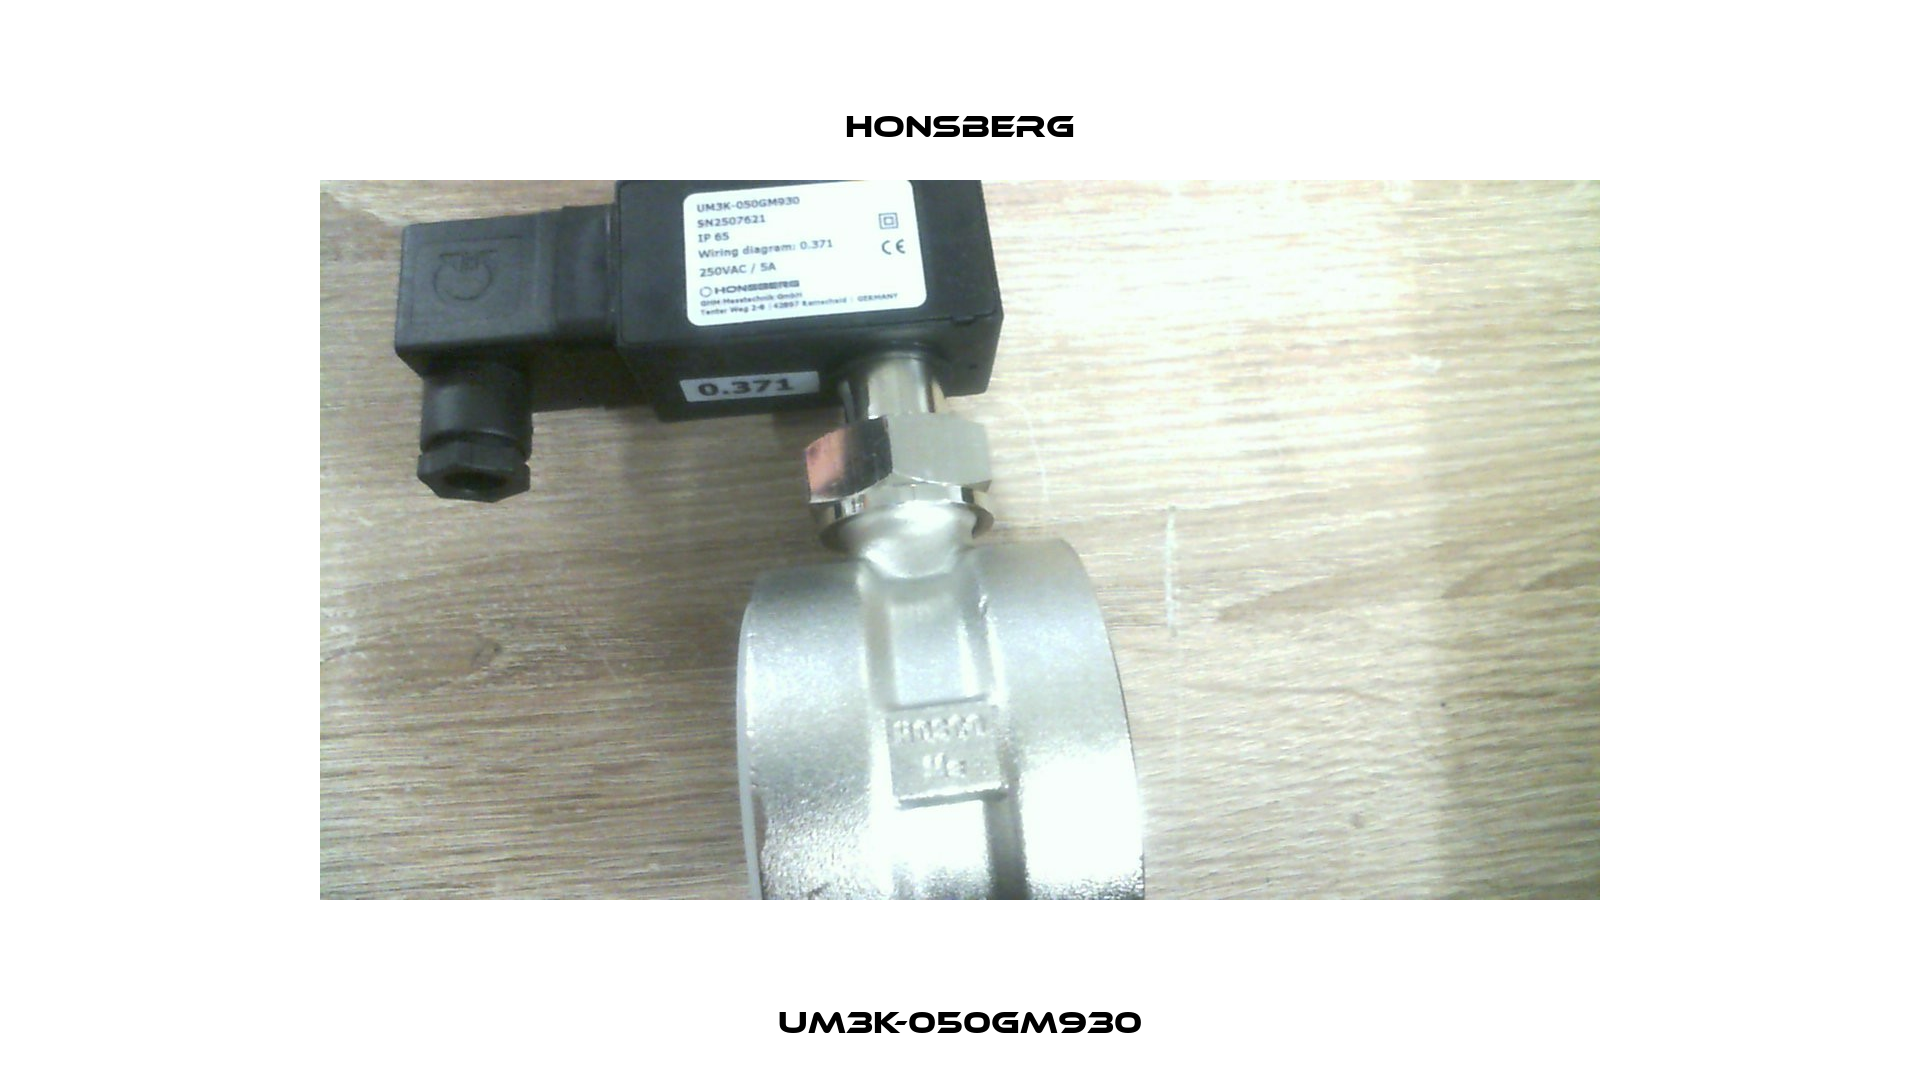 UM3K-050GM930 Honsberg